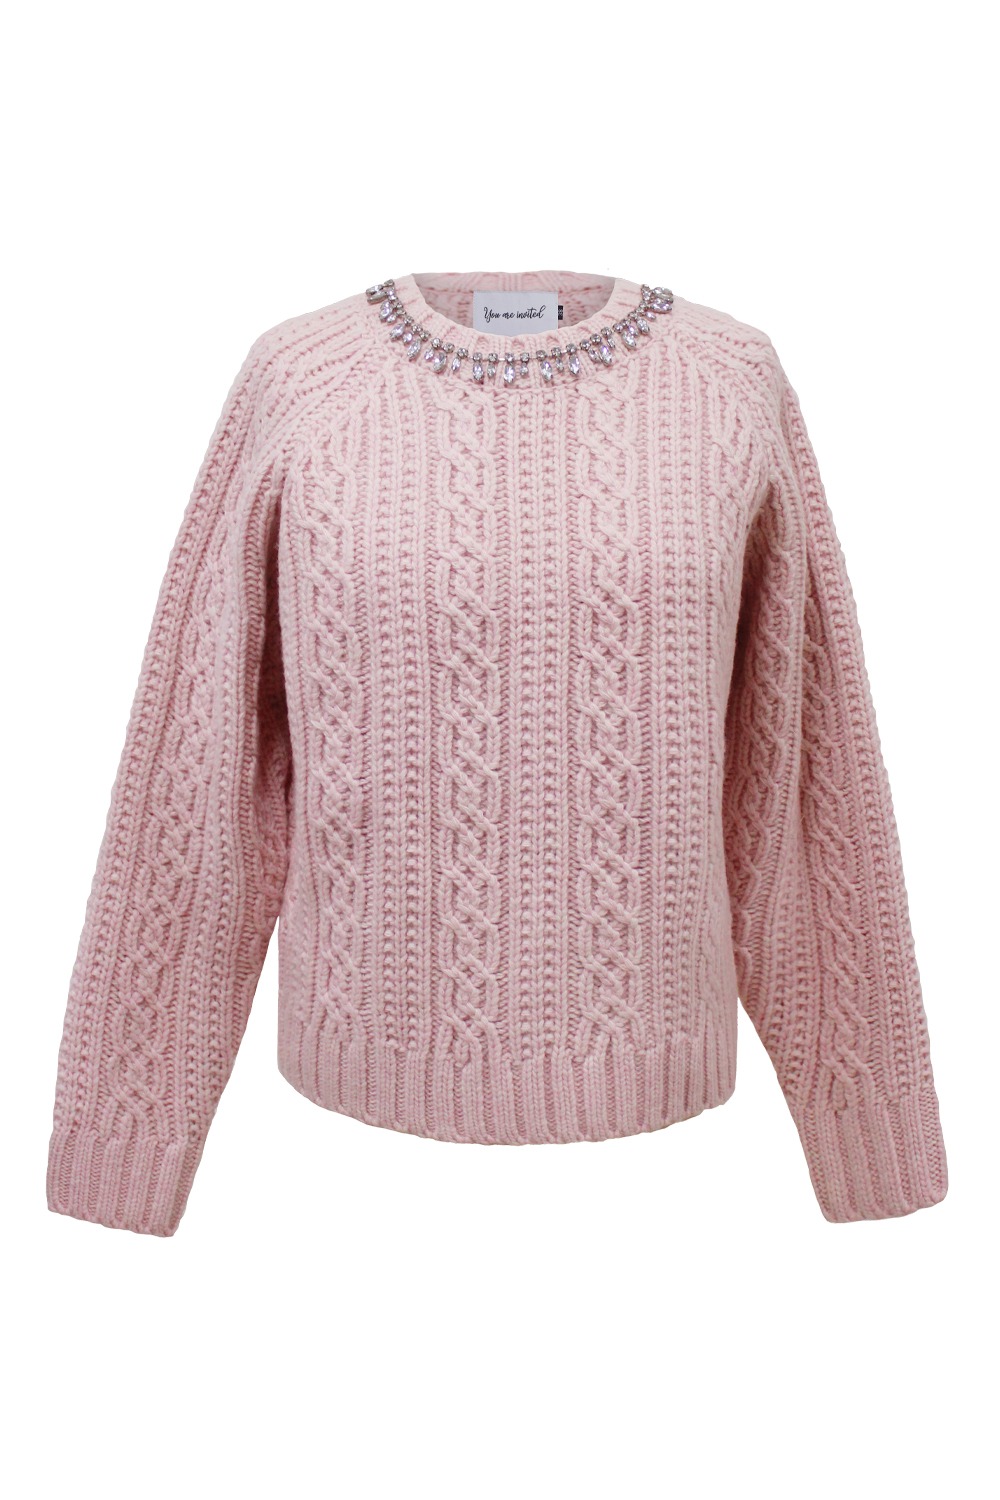 [자사몰 단독] Jewel wool cable knit (Pink)